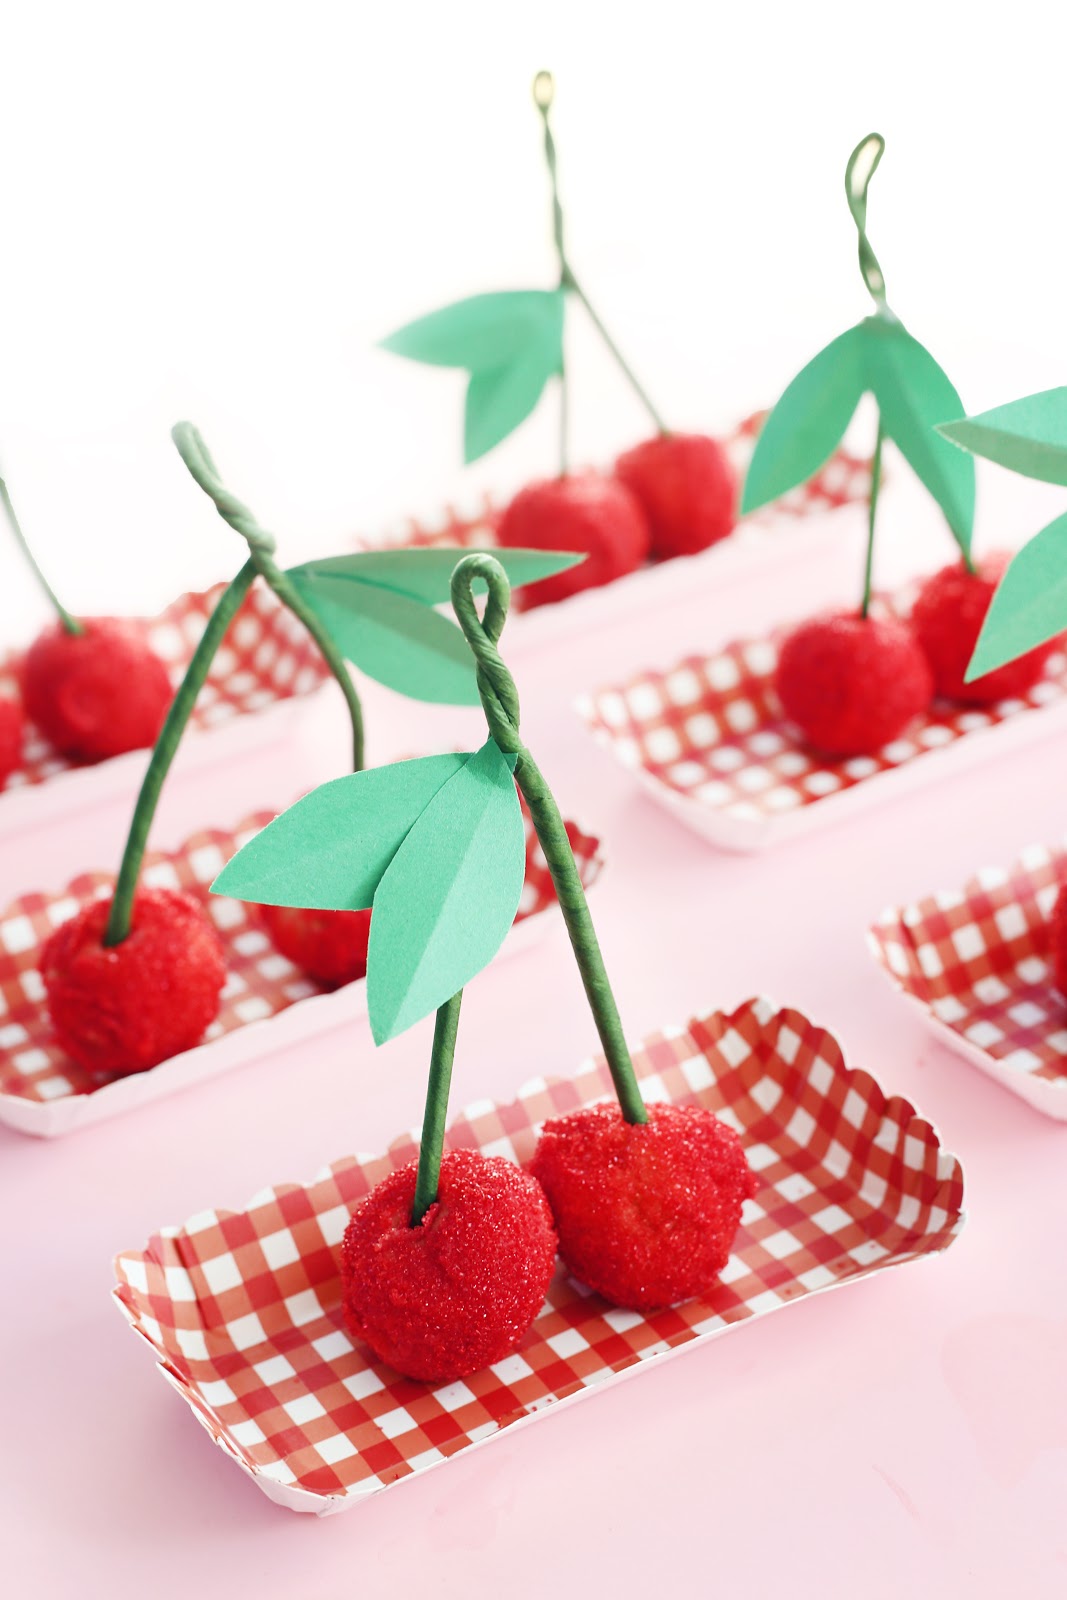 Strawberries and Cream Cheesecake Cake | Homemade Strawberry Cake